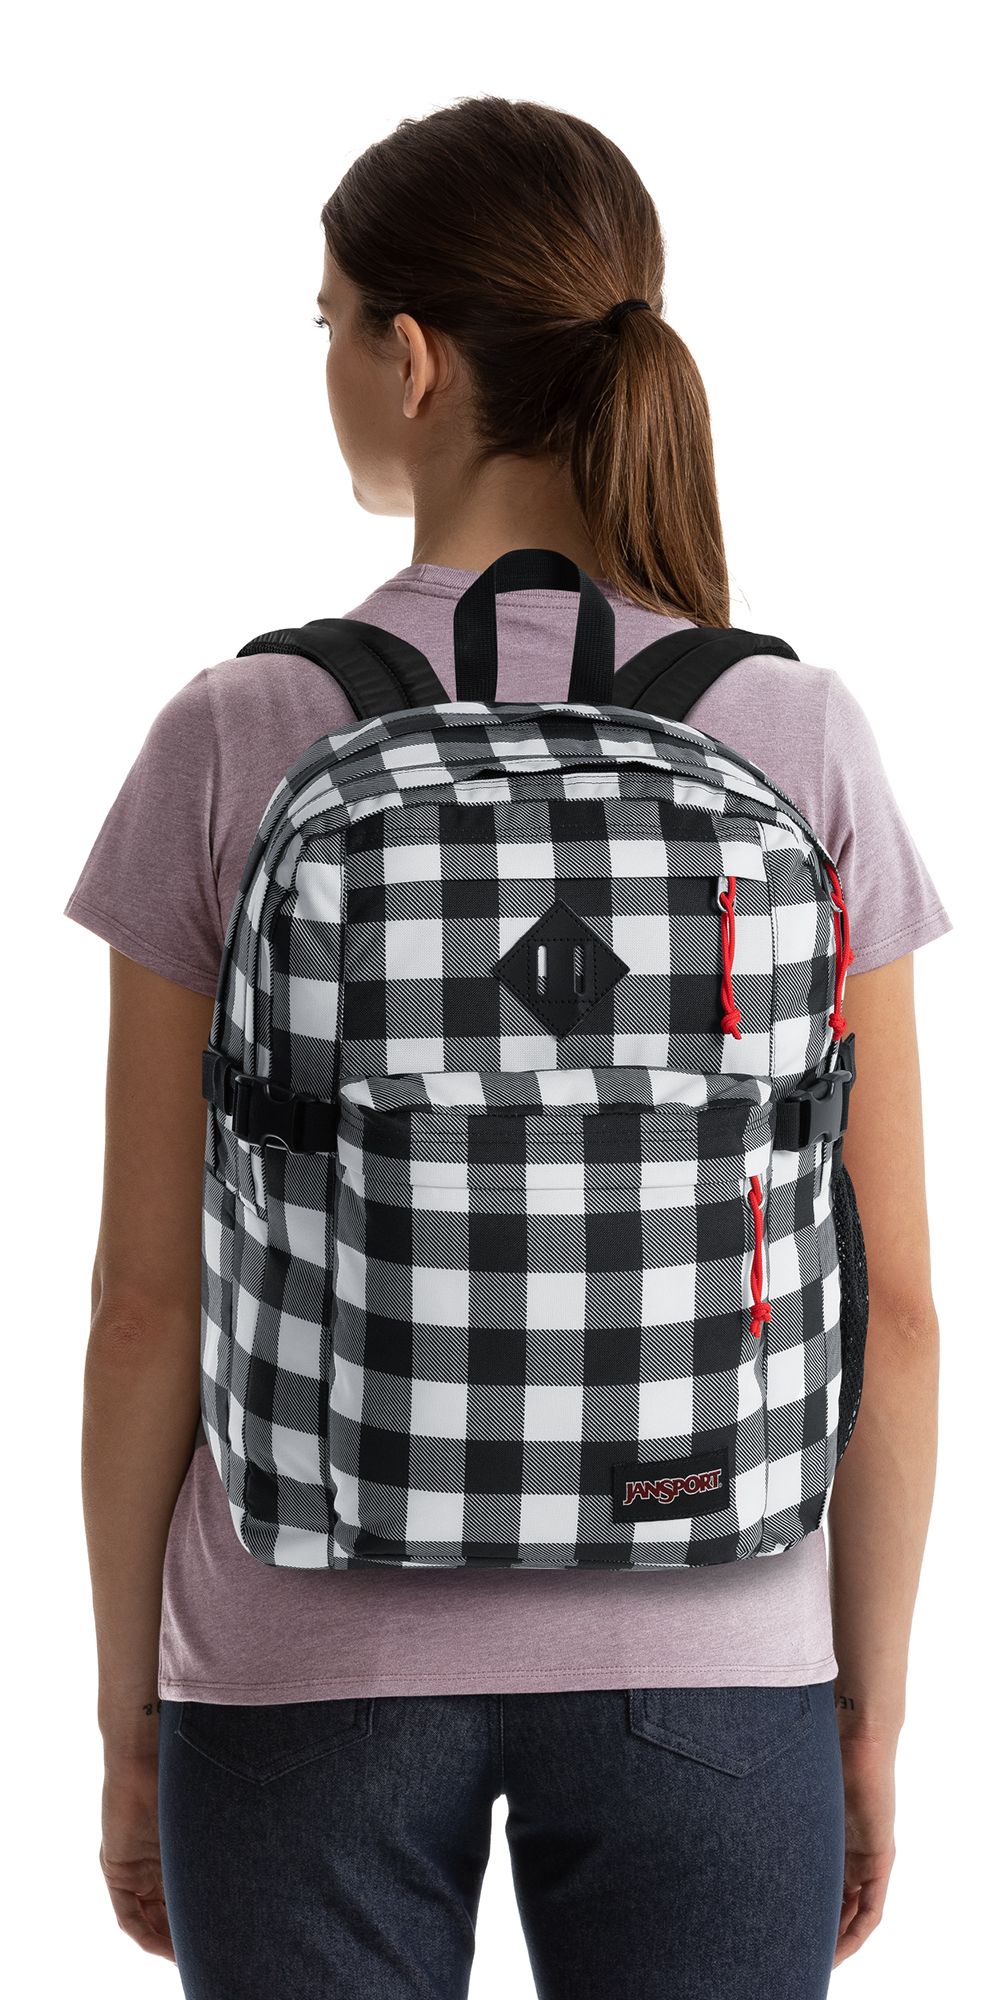 jansport plaid backpack